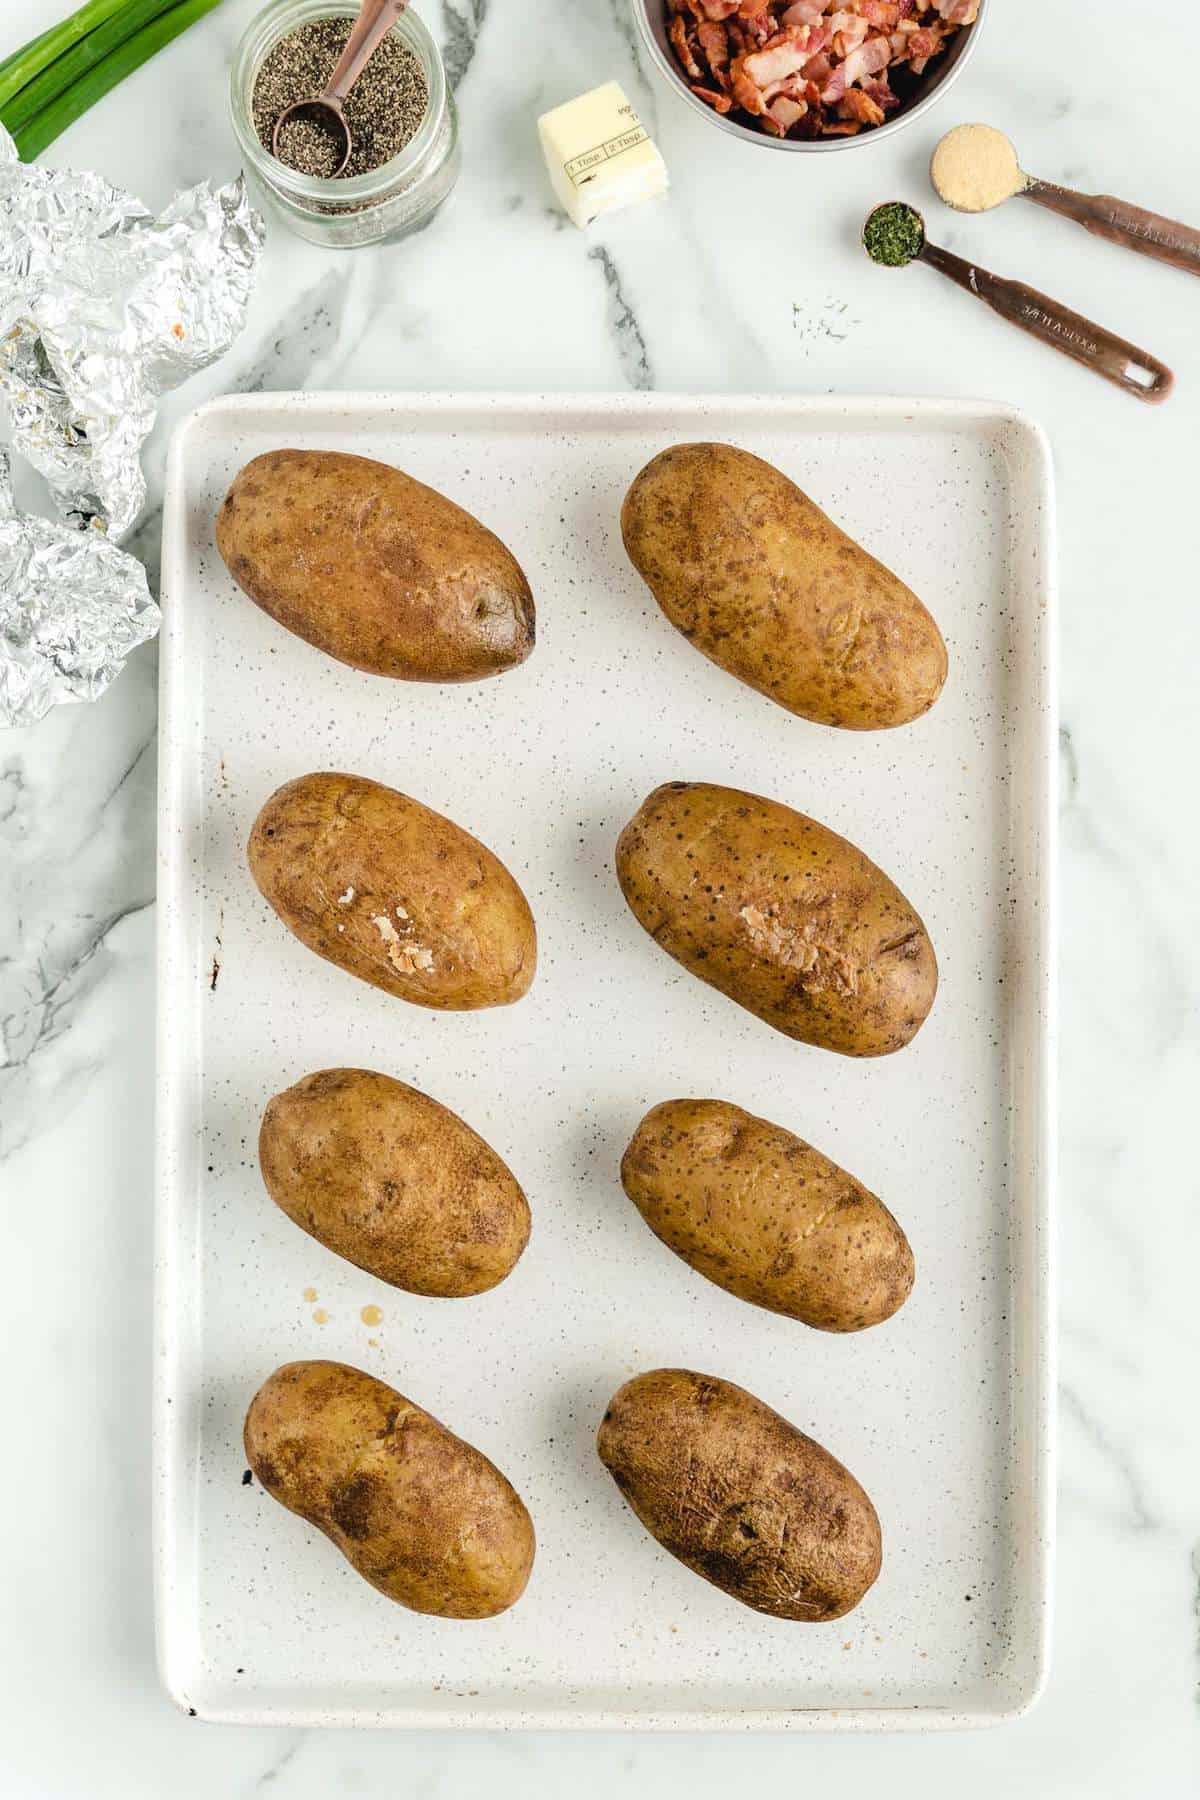 unwrap each potatoes